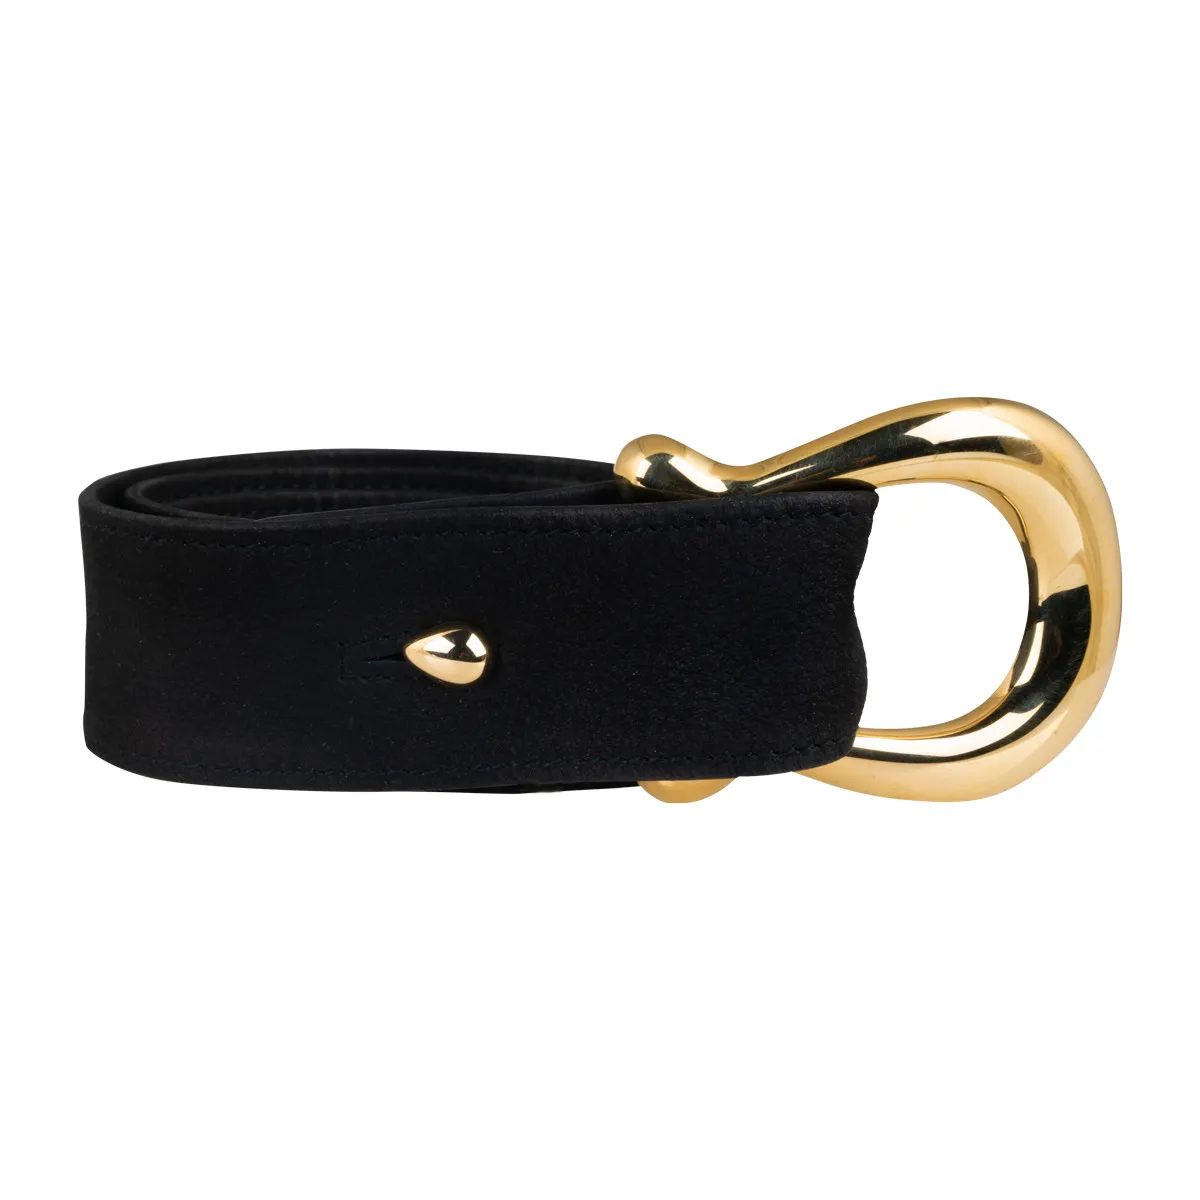 Vintage black leather key loop with gold hook.